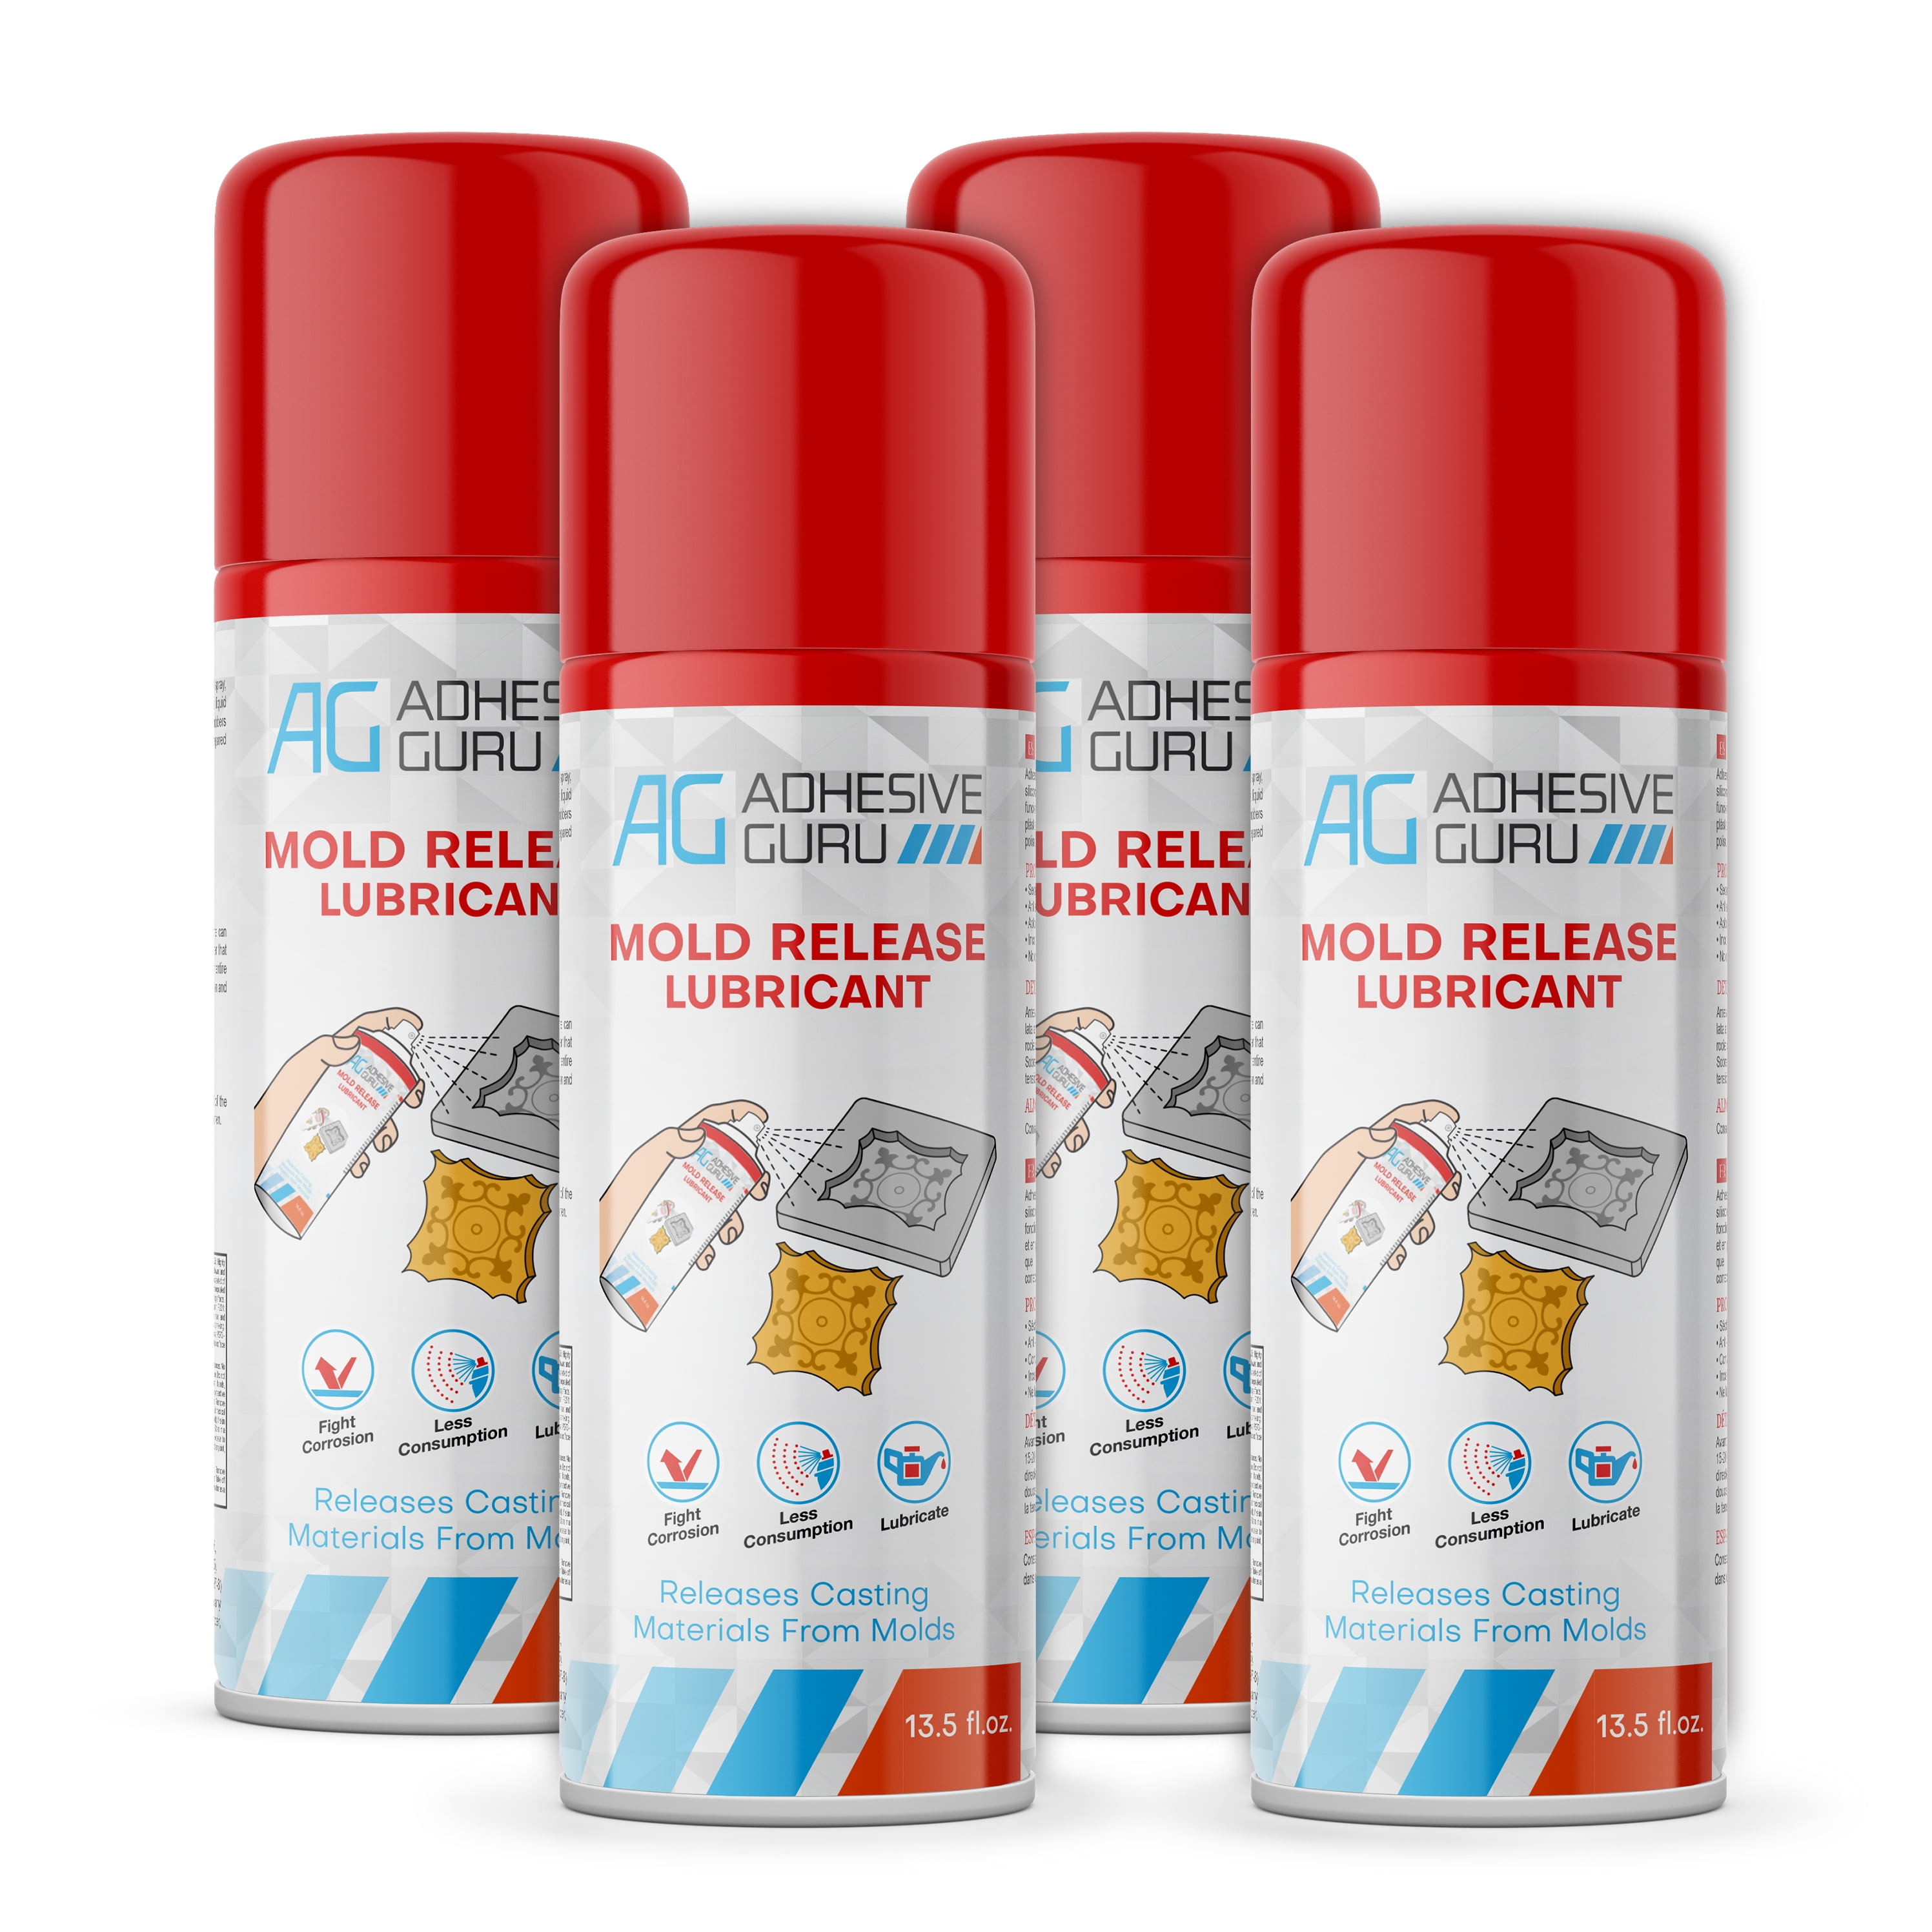 Generic Akfix Silicone Mold Release Spray, Heavy Duty, Aerosol Release Agent 13.5 fl oz (400ml)